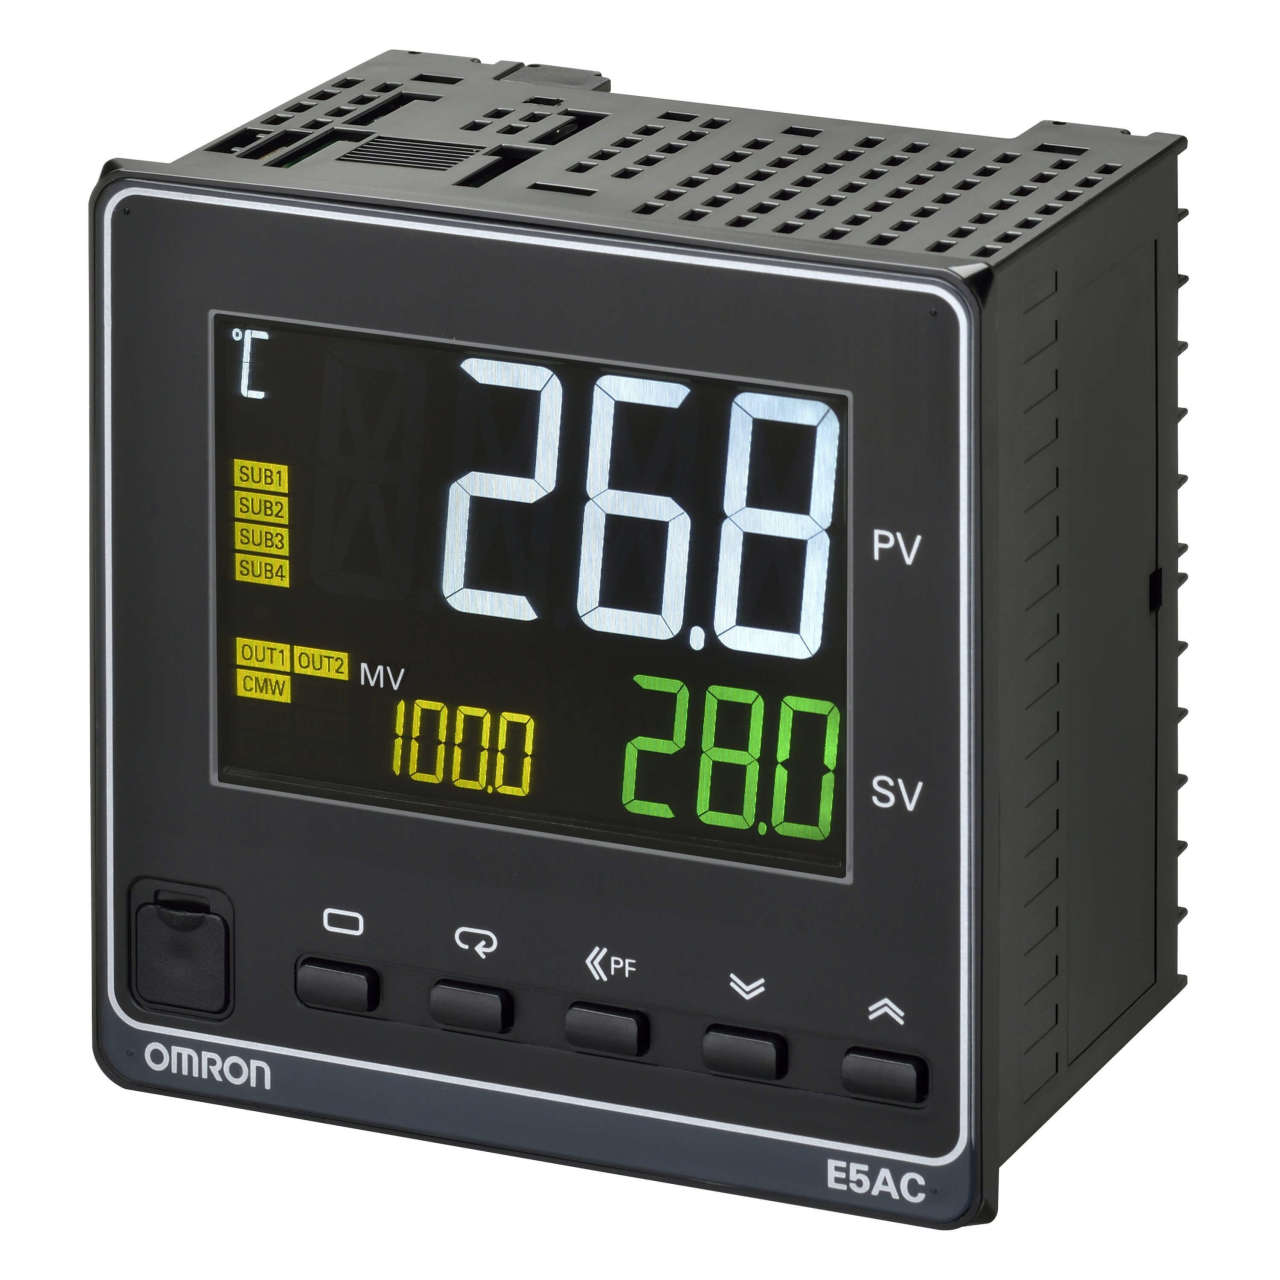 Omron - E5AC-CC4A5M-014  Sıcaklık kontrolörü; 1/4 DIN (96x96 mm); t/c & Pt100 & analog giriş;4 alarm çıkışı; 2 x 0-20/4-20mA akım çıkışı;4 event girişi;uzaktan set değeri;RS-485 haberleşme;100-240 VAC